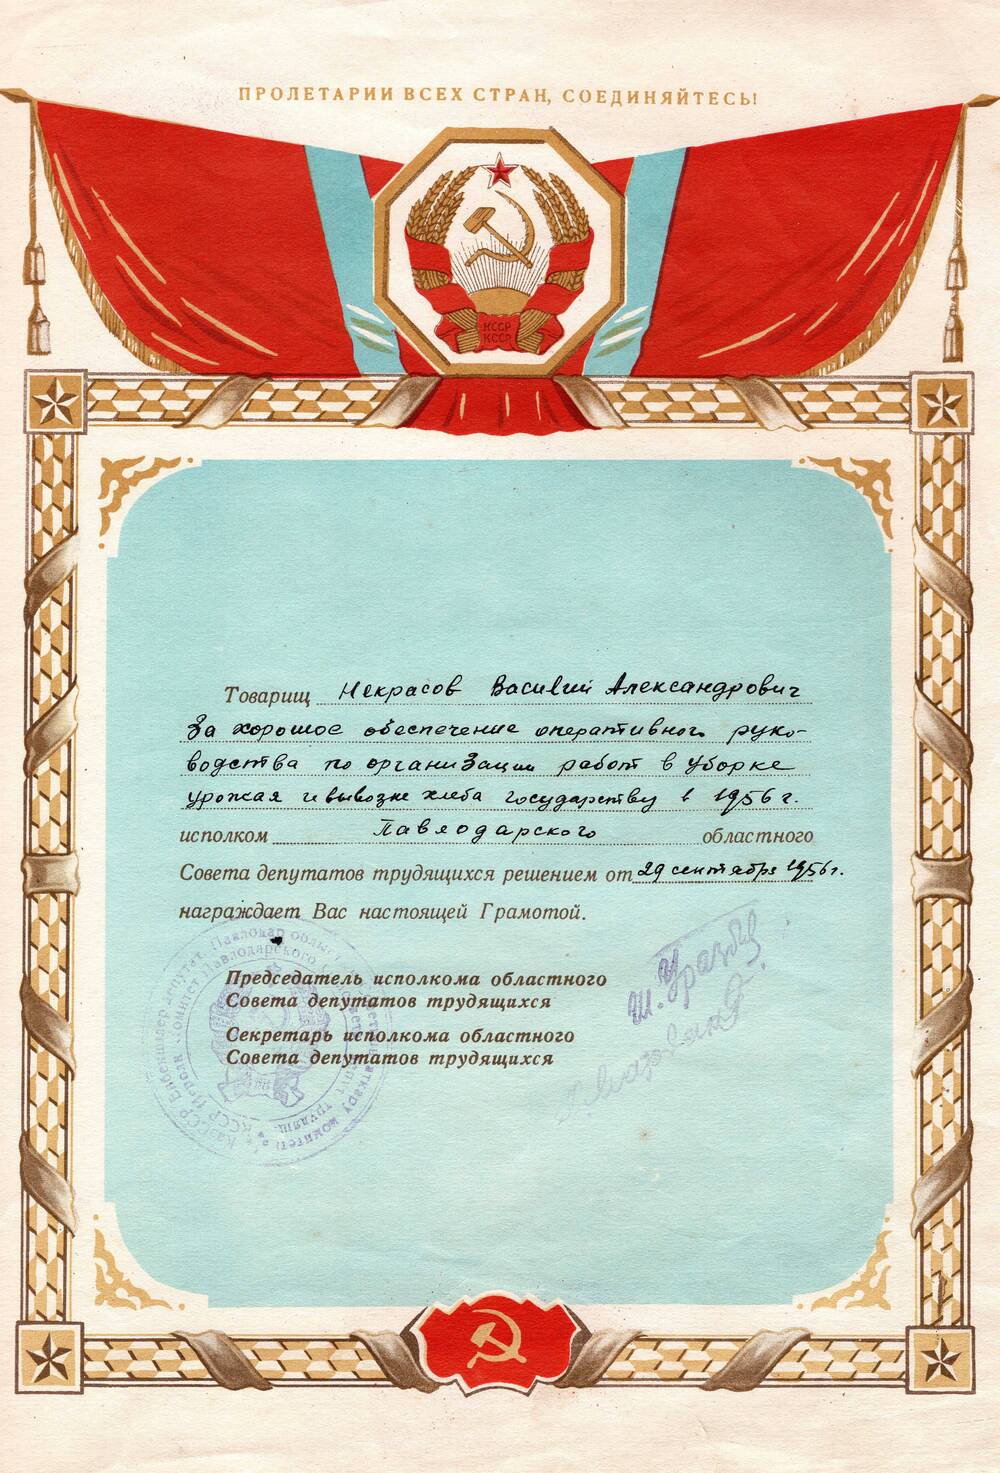 Грамота Павлодарского областного Совета депутатов на имя Некрасова Василия Александровича